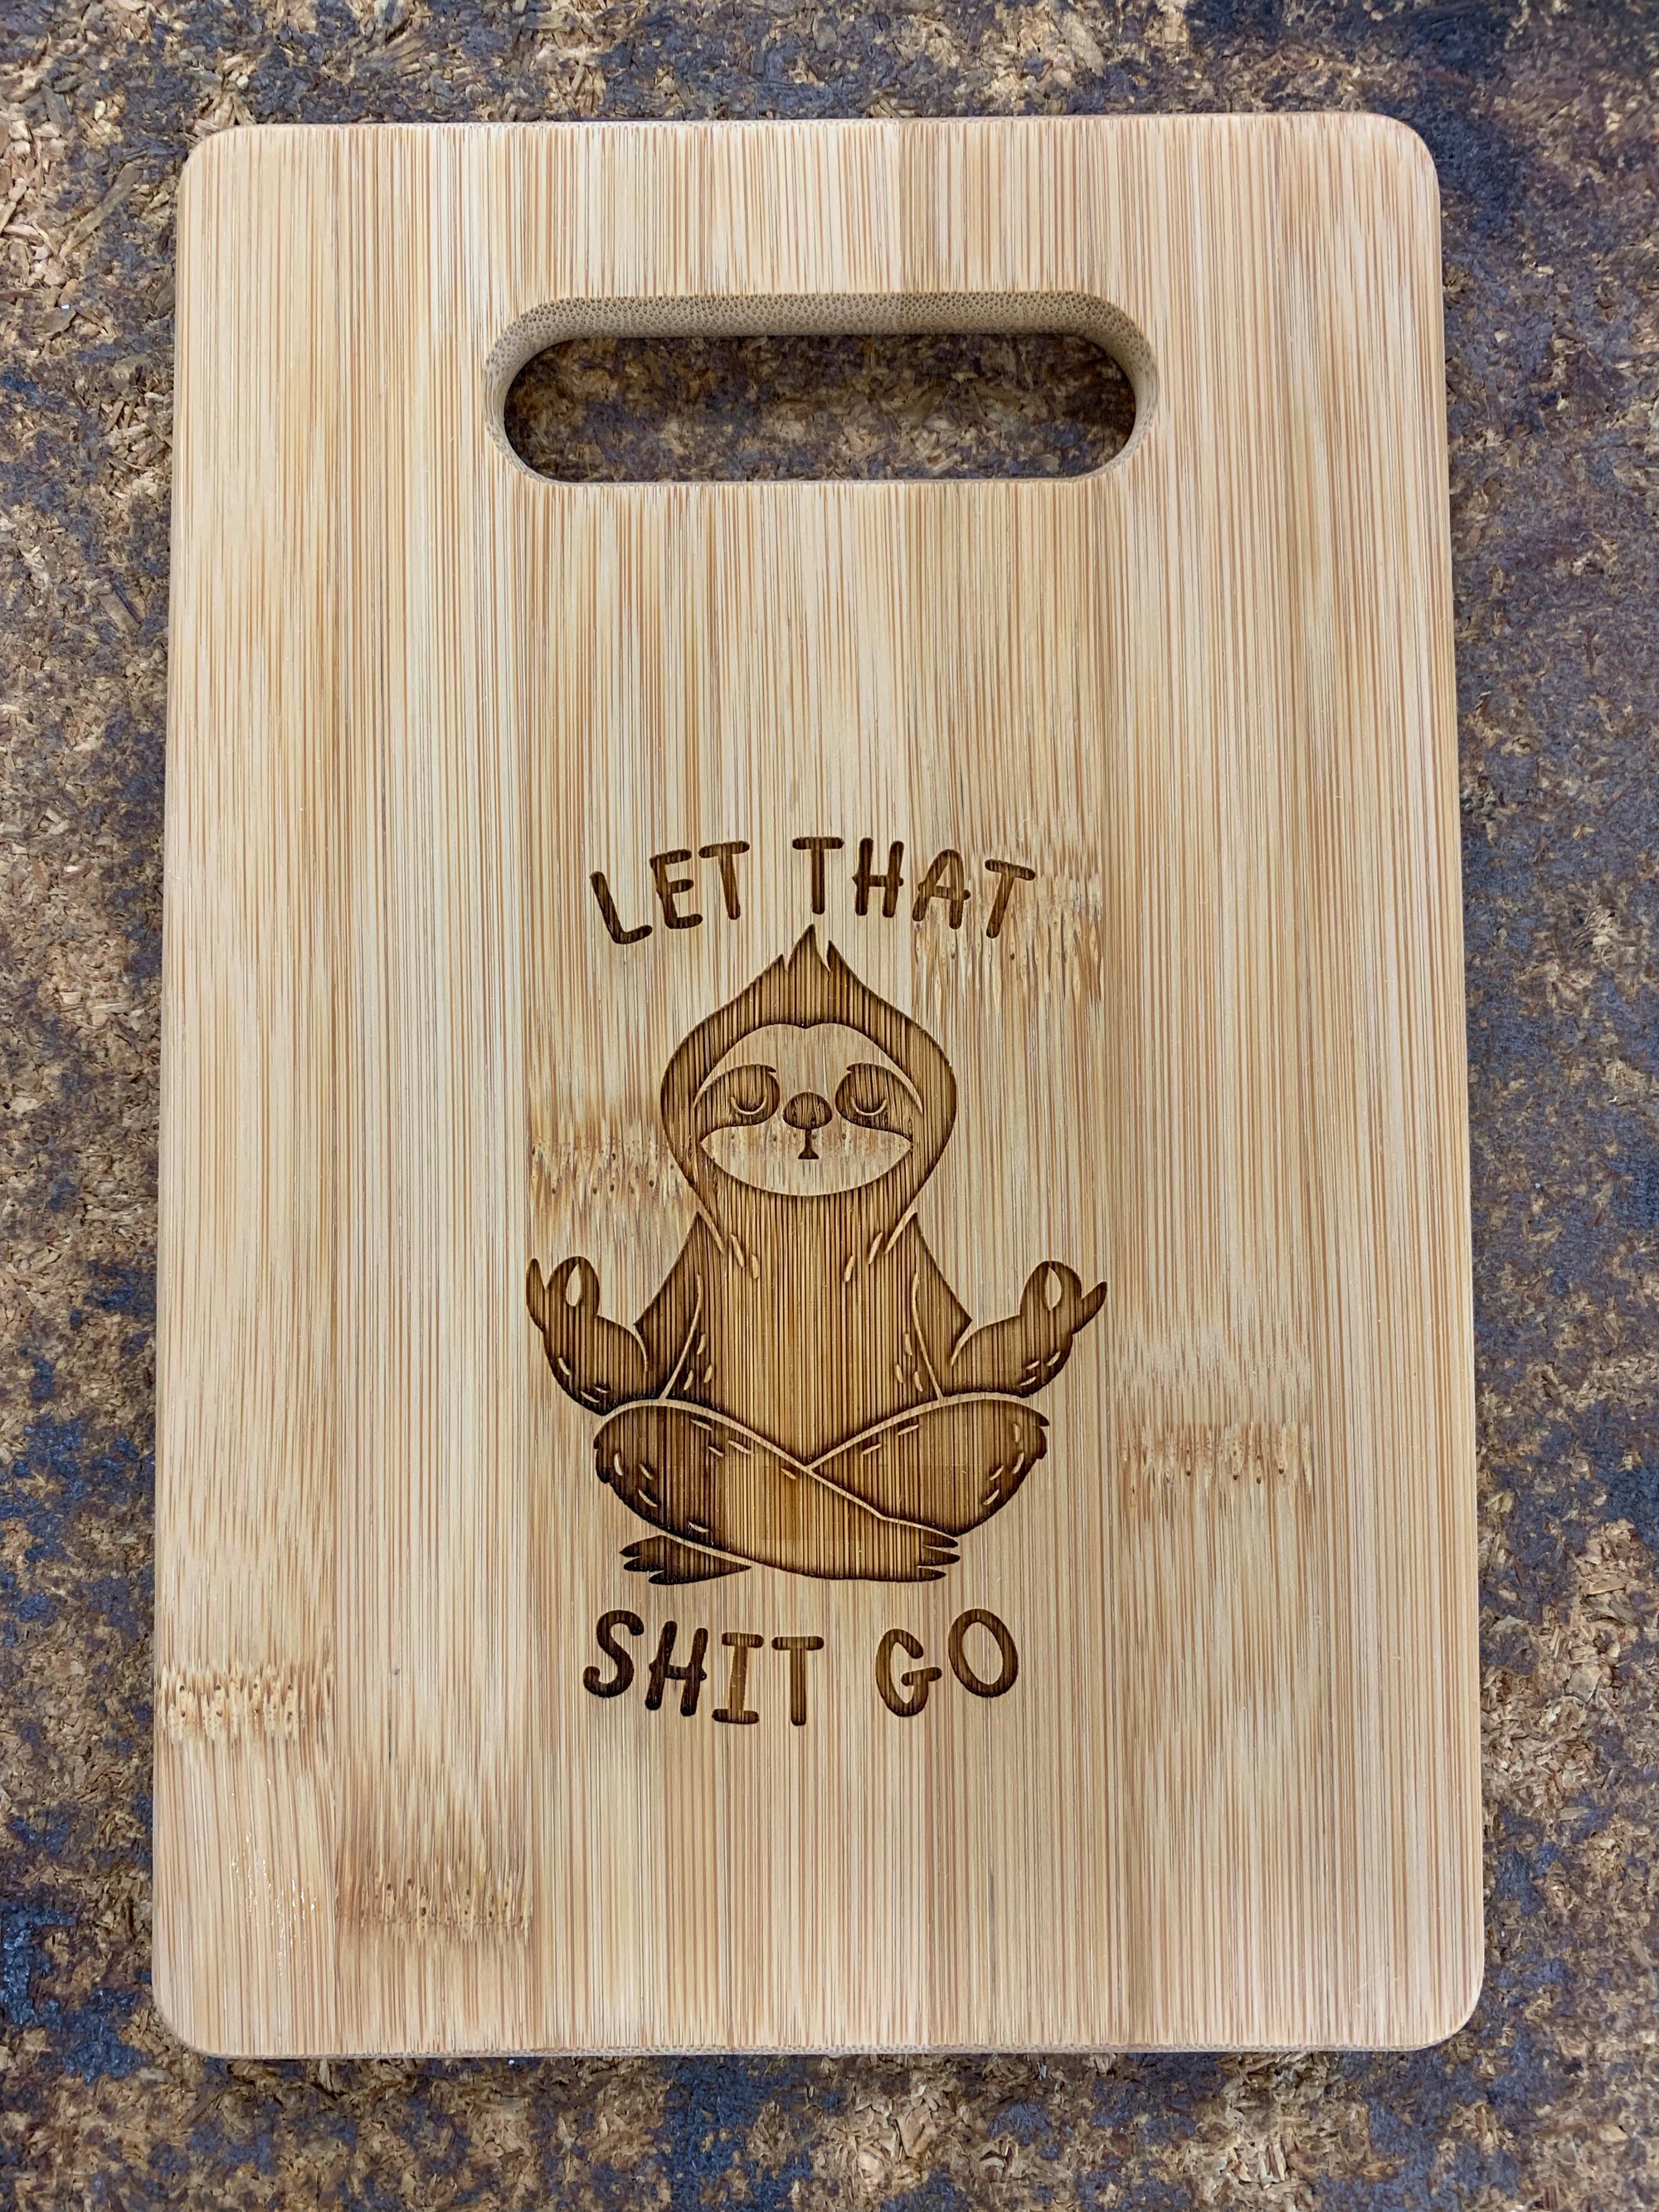 9 x 6 Bamboo Bar Cutting Board - Let That Shit Go - ImpressMeGifts